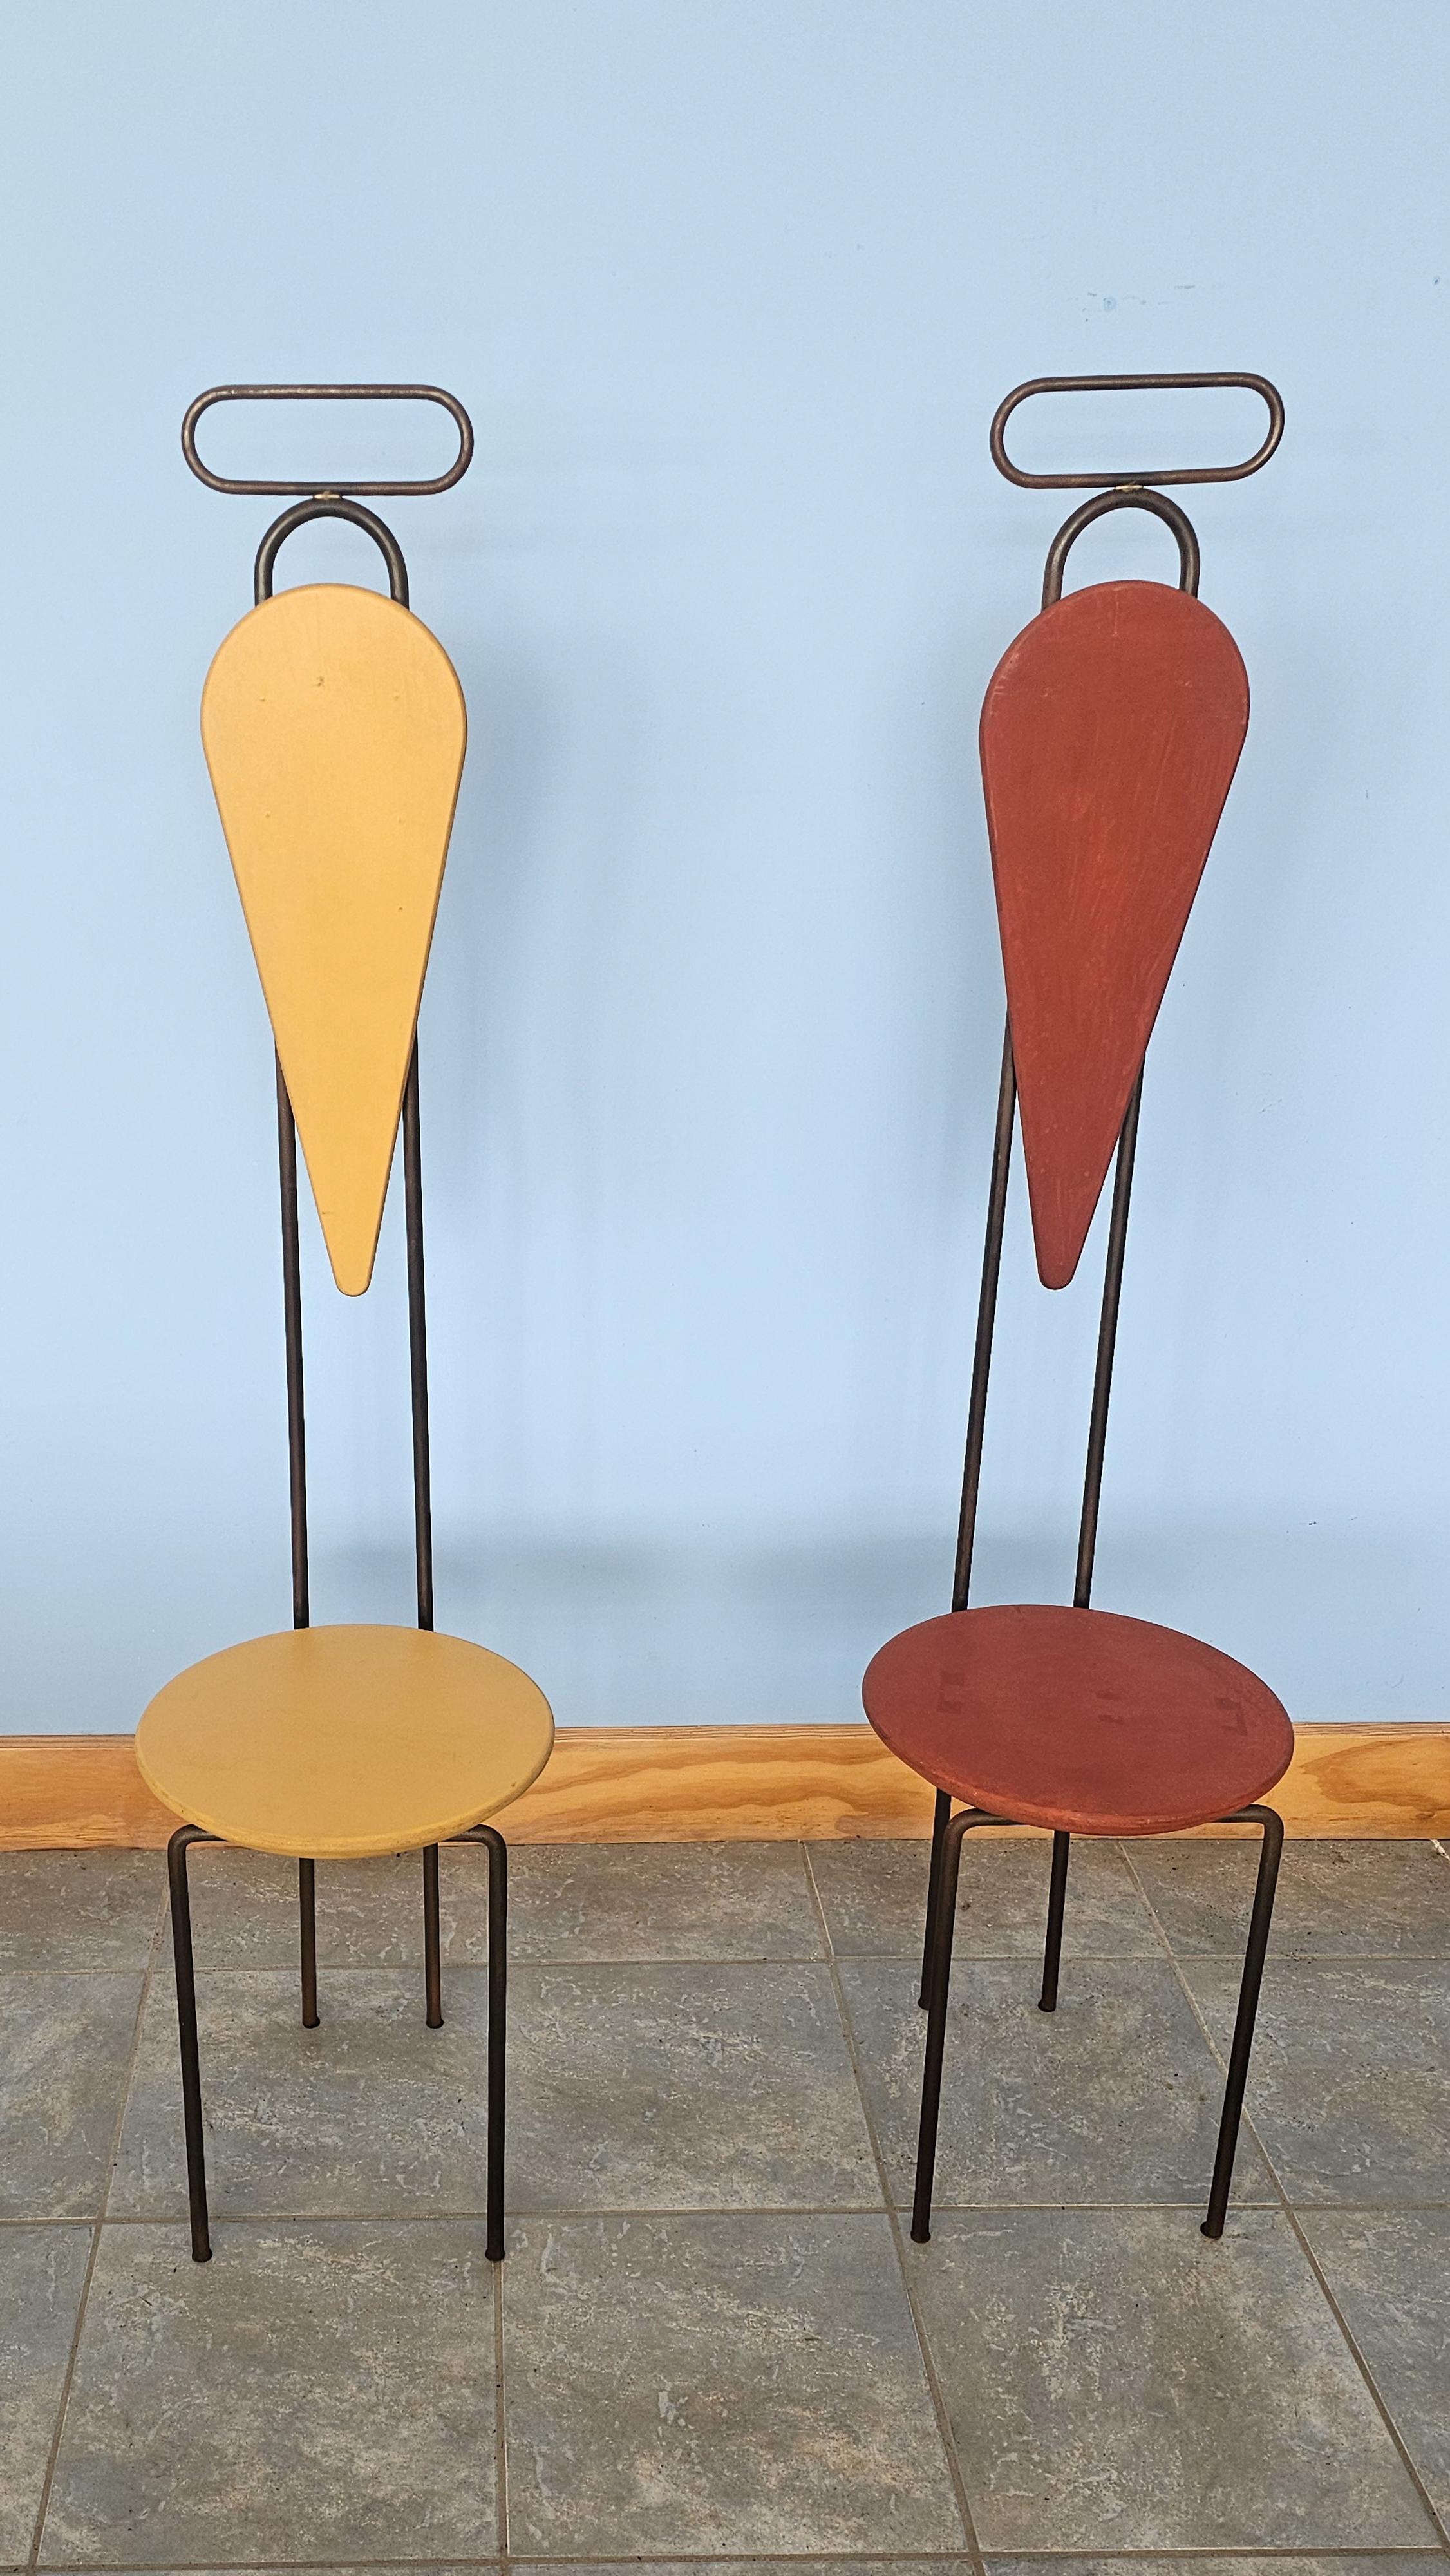 L'artiste américain Artistics a conçu ces deux chaises pour une exposition individuelle parrainée par Cappellini et présentée dans la salle d'exposition de Carugo en 1990. L'artisanat, l'inspiration de la Nature et l'utilisation de matériaux